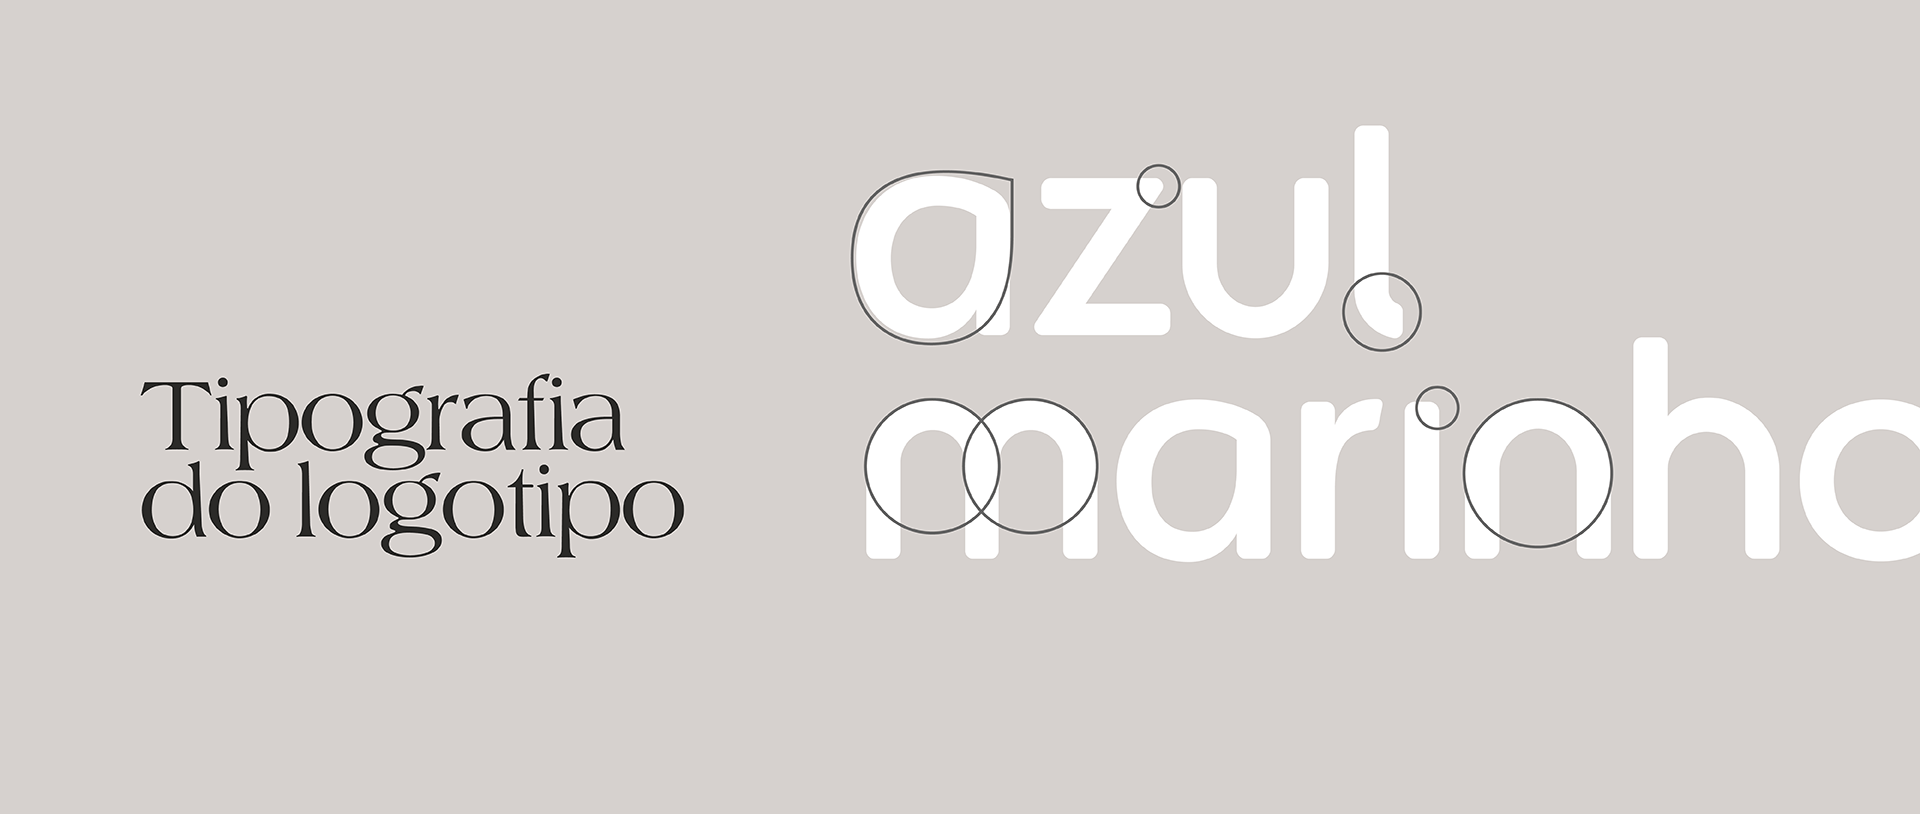 Apresentação_Azul_Marinho_Nuvem-Studio-Design17